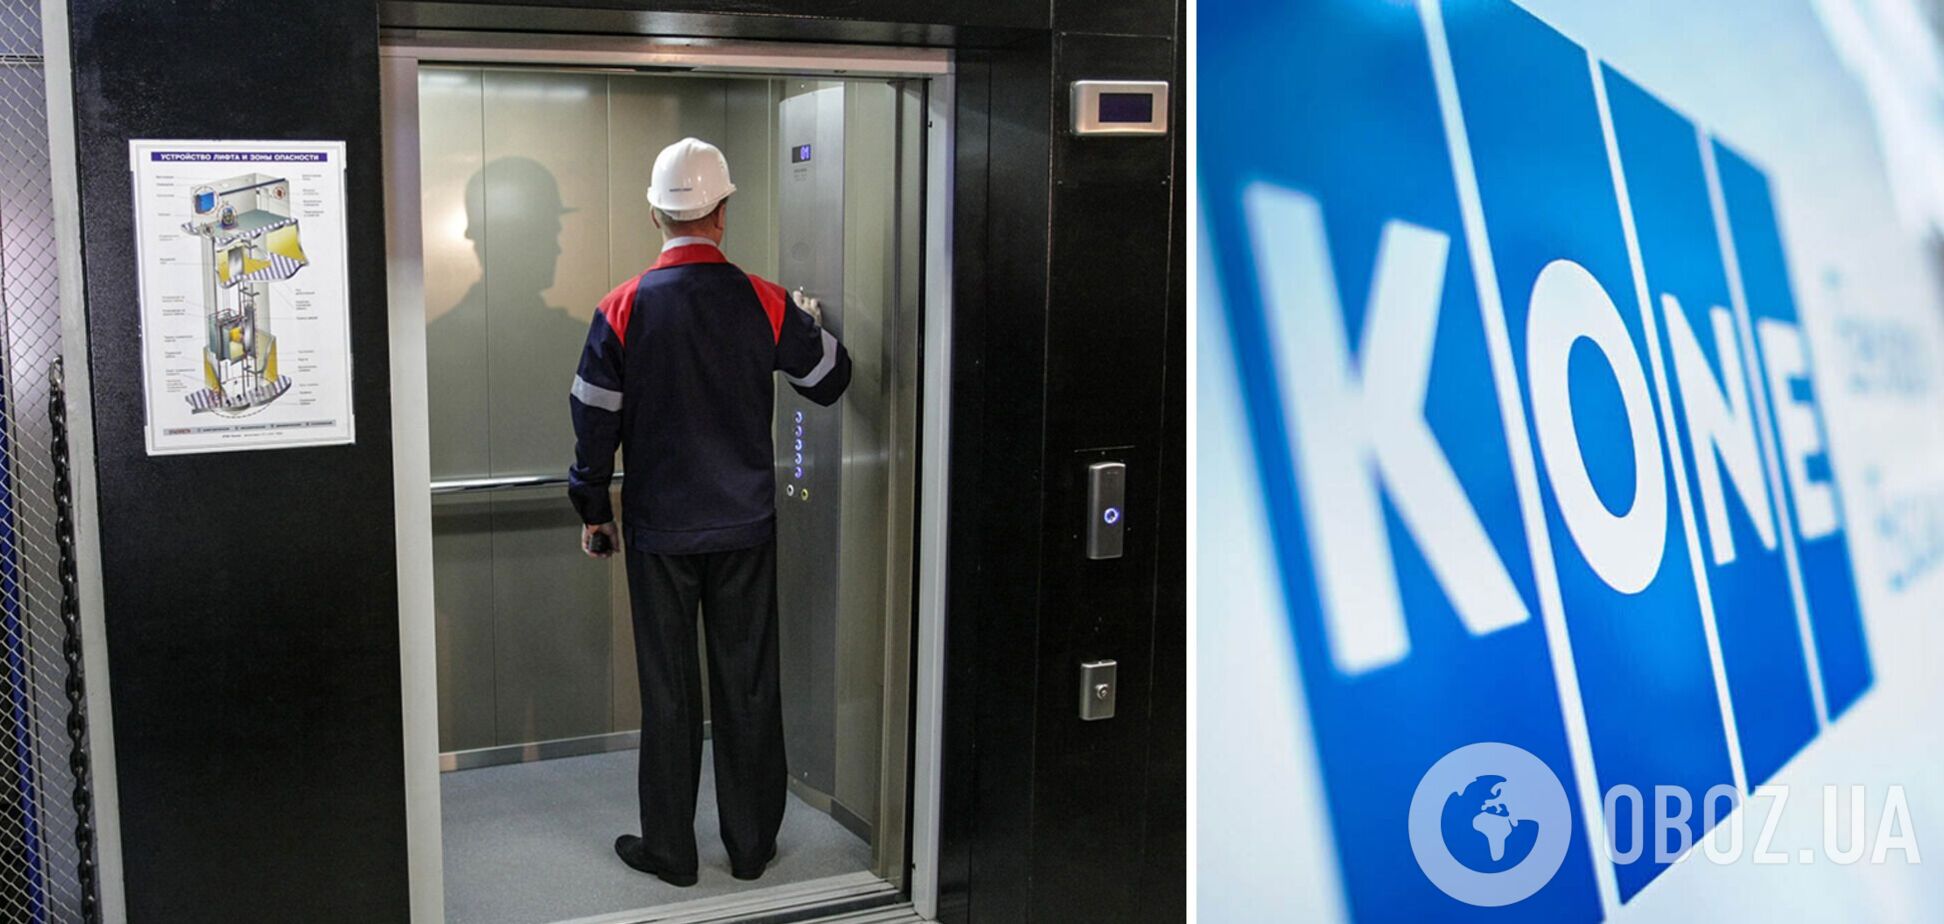 Новых лифтов KONE в России больше не будет